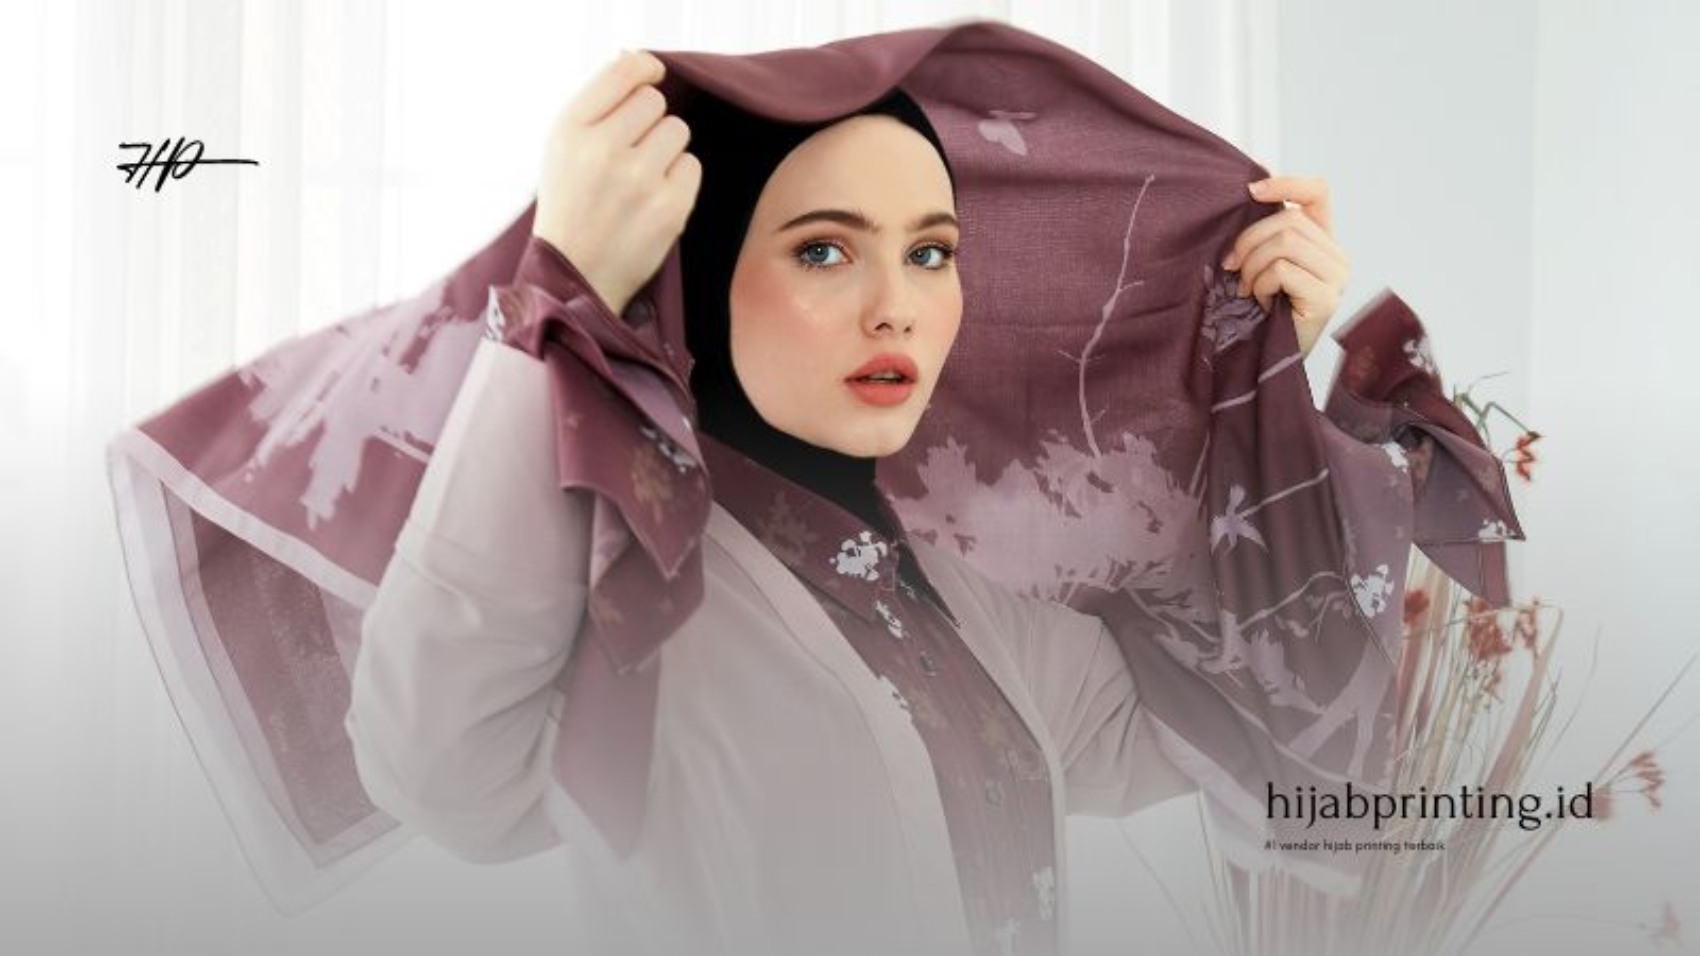 Memilih Jasa Cetak Hijab Berkualitas Tinggi